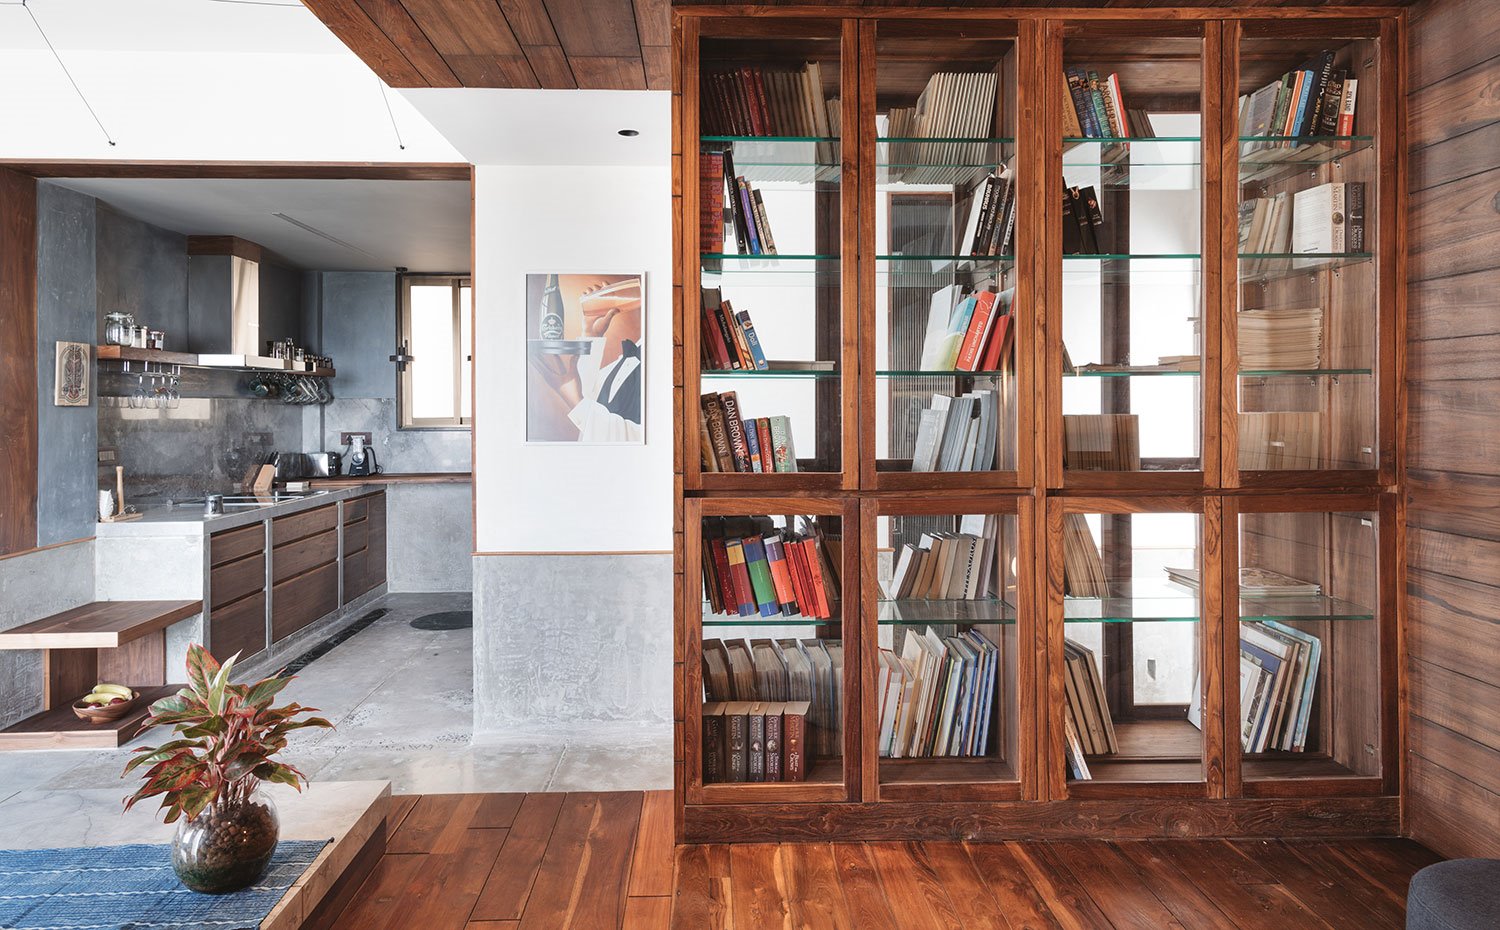 Vitrina de cristal y madera para libros en estructura de madera elevada junto a cocina